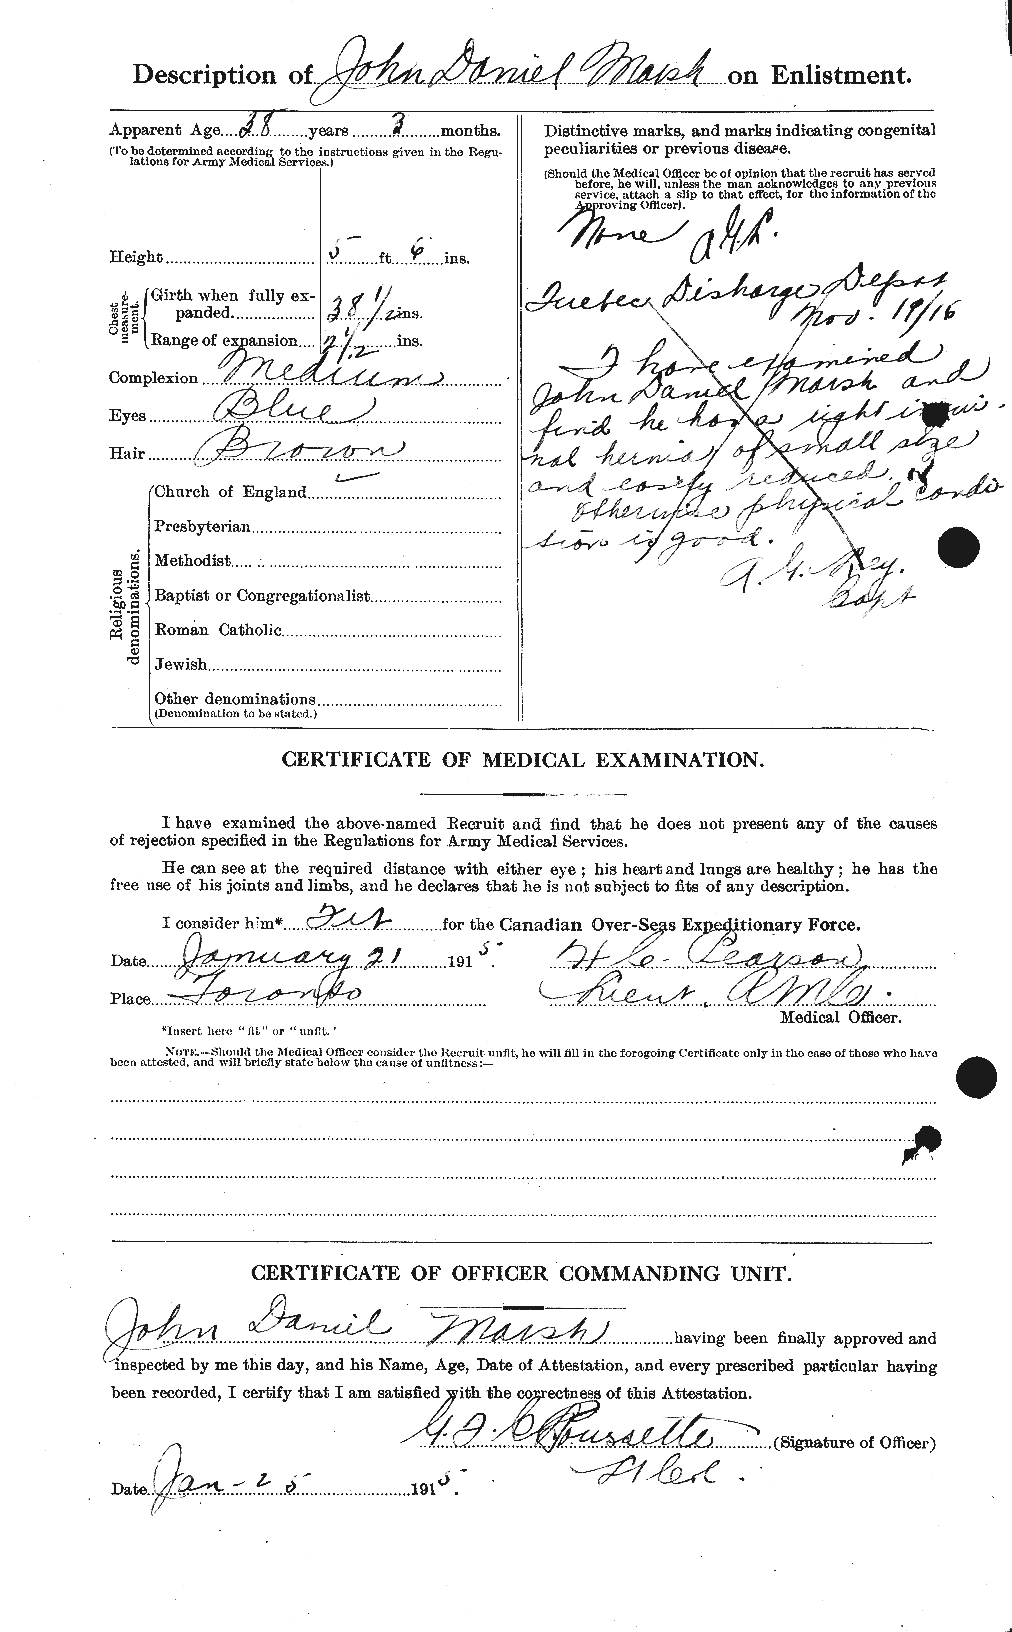 Dossiers du Personnel de la Première Guerre mondiale - CEC 495582b